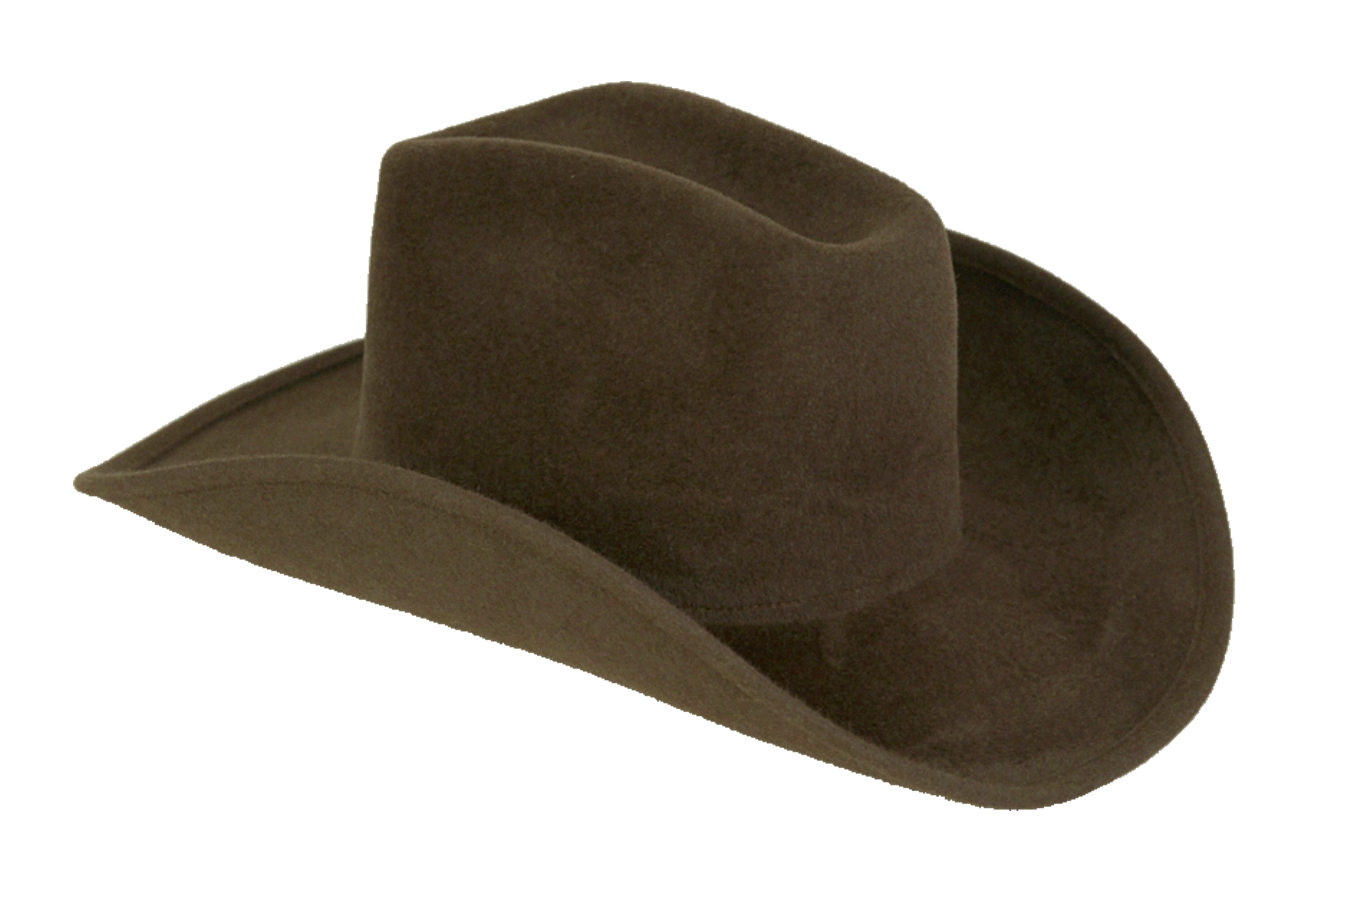 Kovboy şapkası